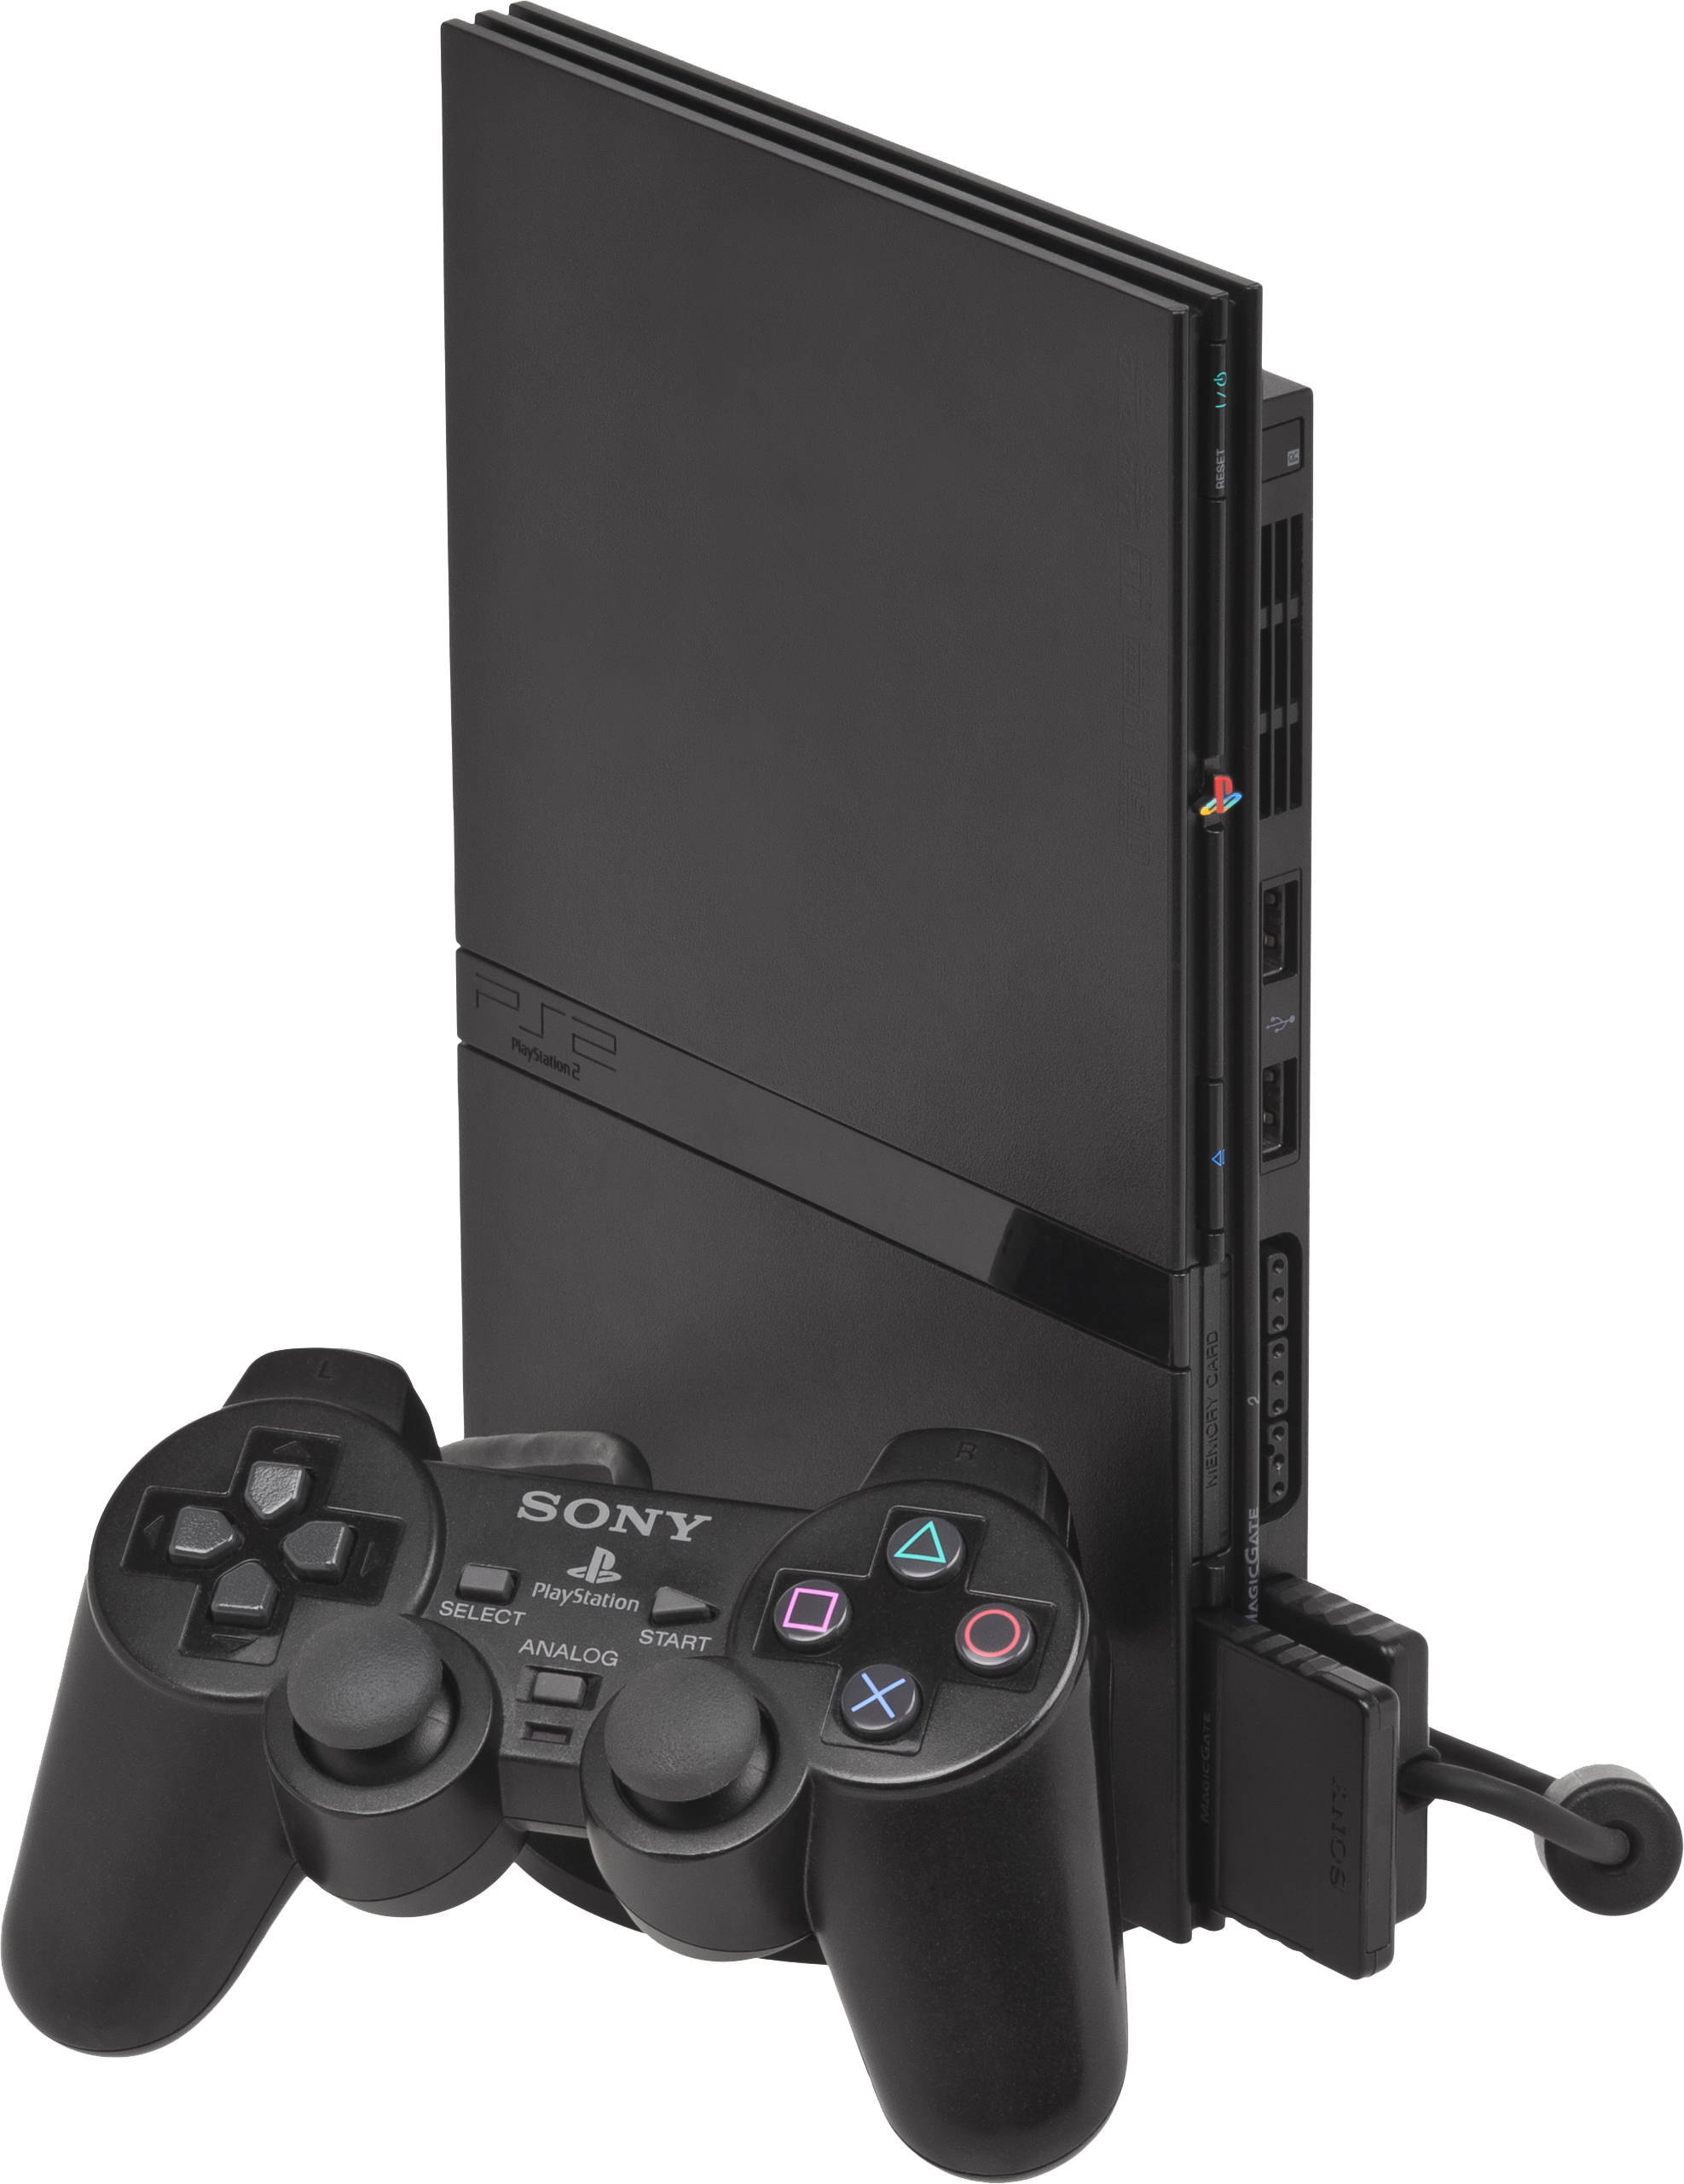 PlayStation 2 Slim | PlayStation Wiki | Fandom